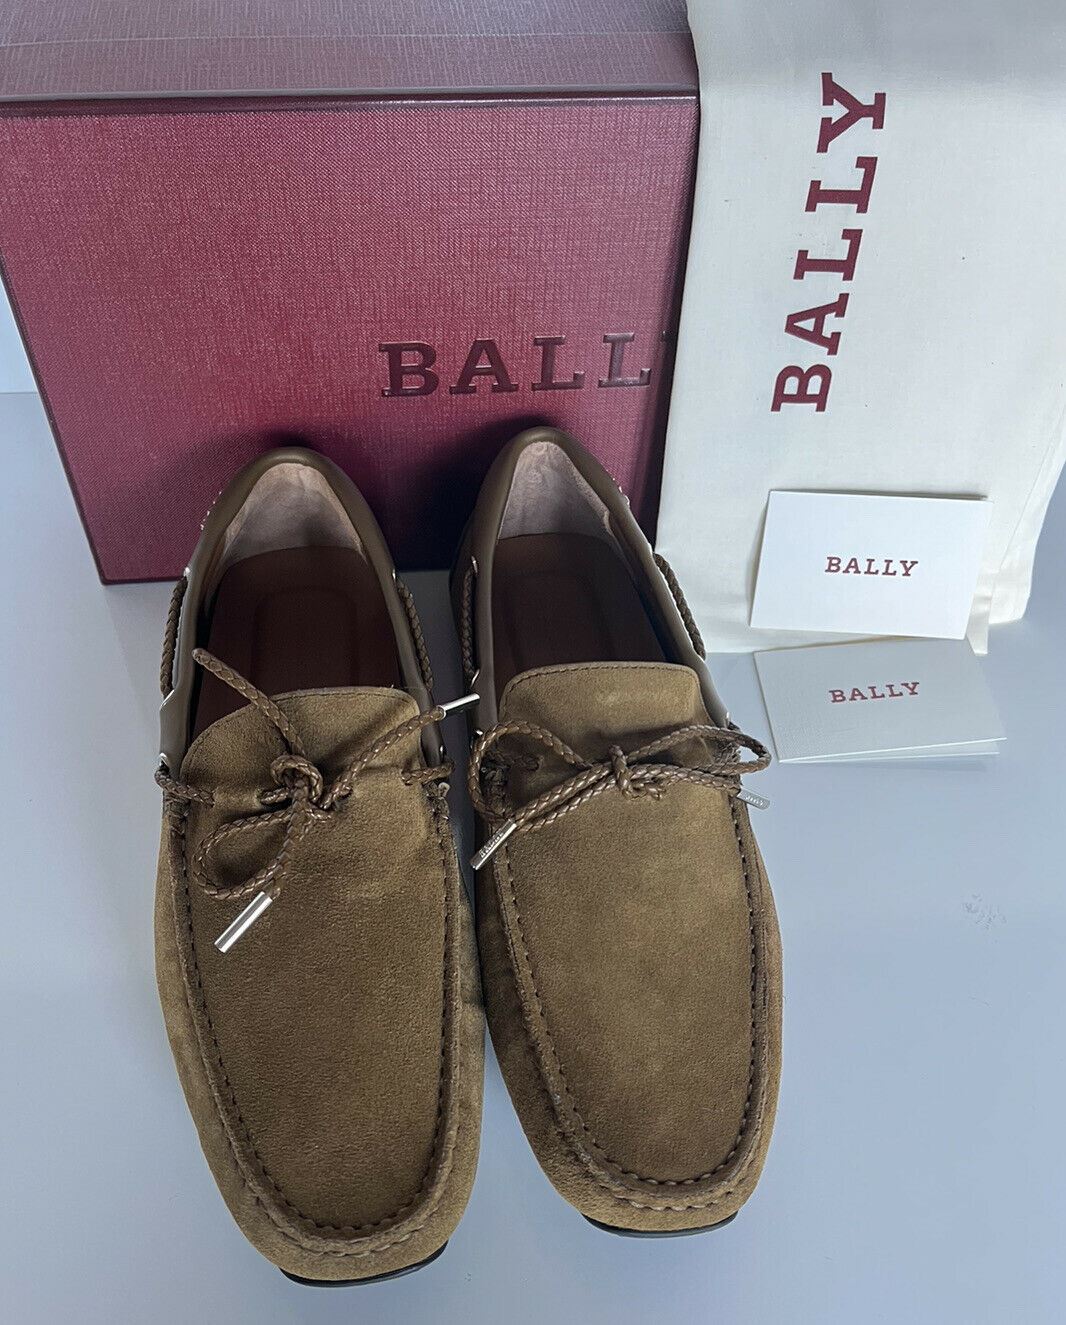 NIB Bally Pindar Men's Suede Drivers Shoes Kangaroo 10.5 D US (43.5 Euro)  73612